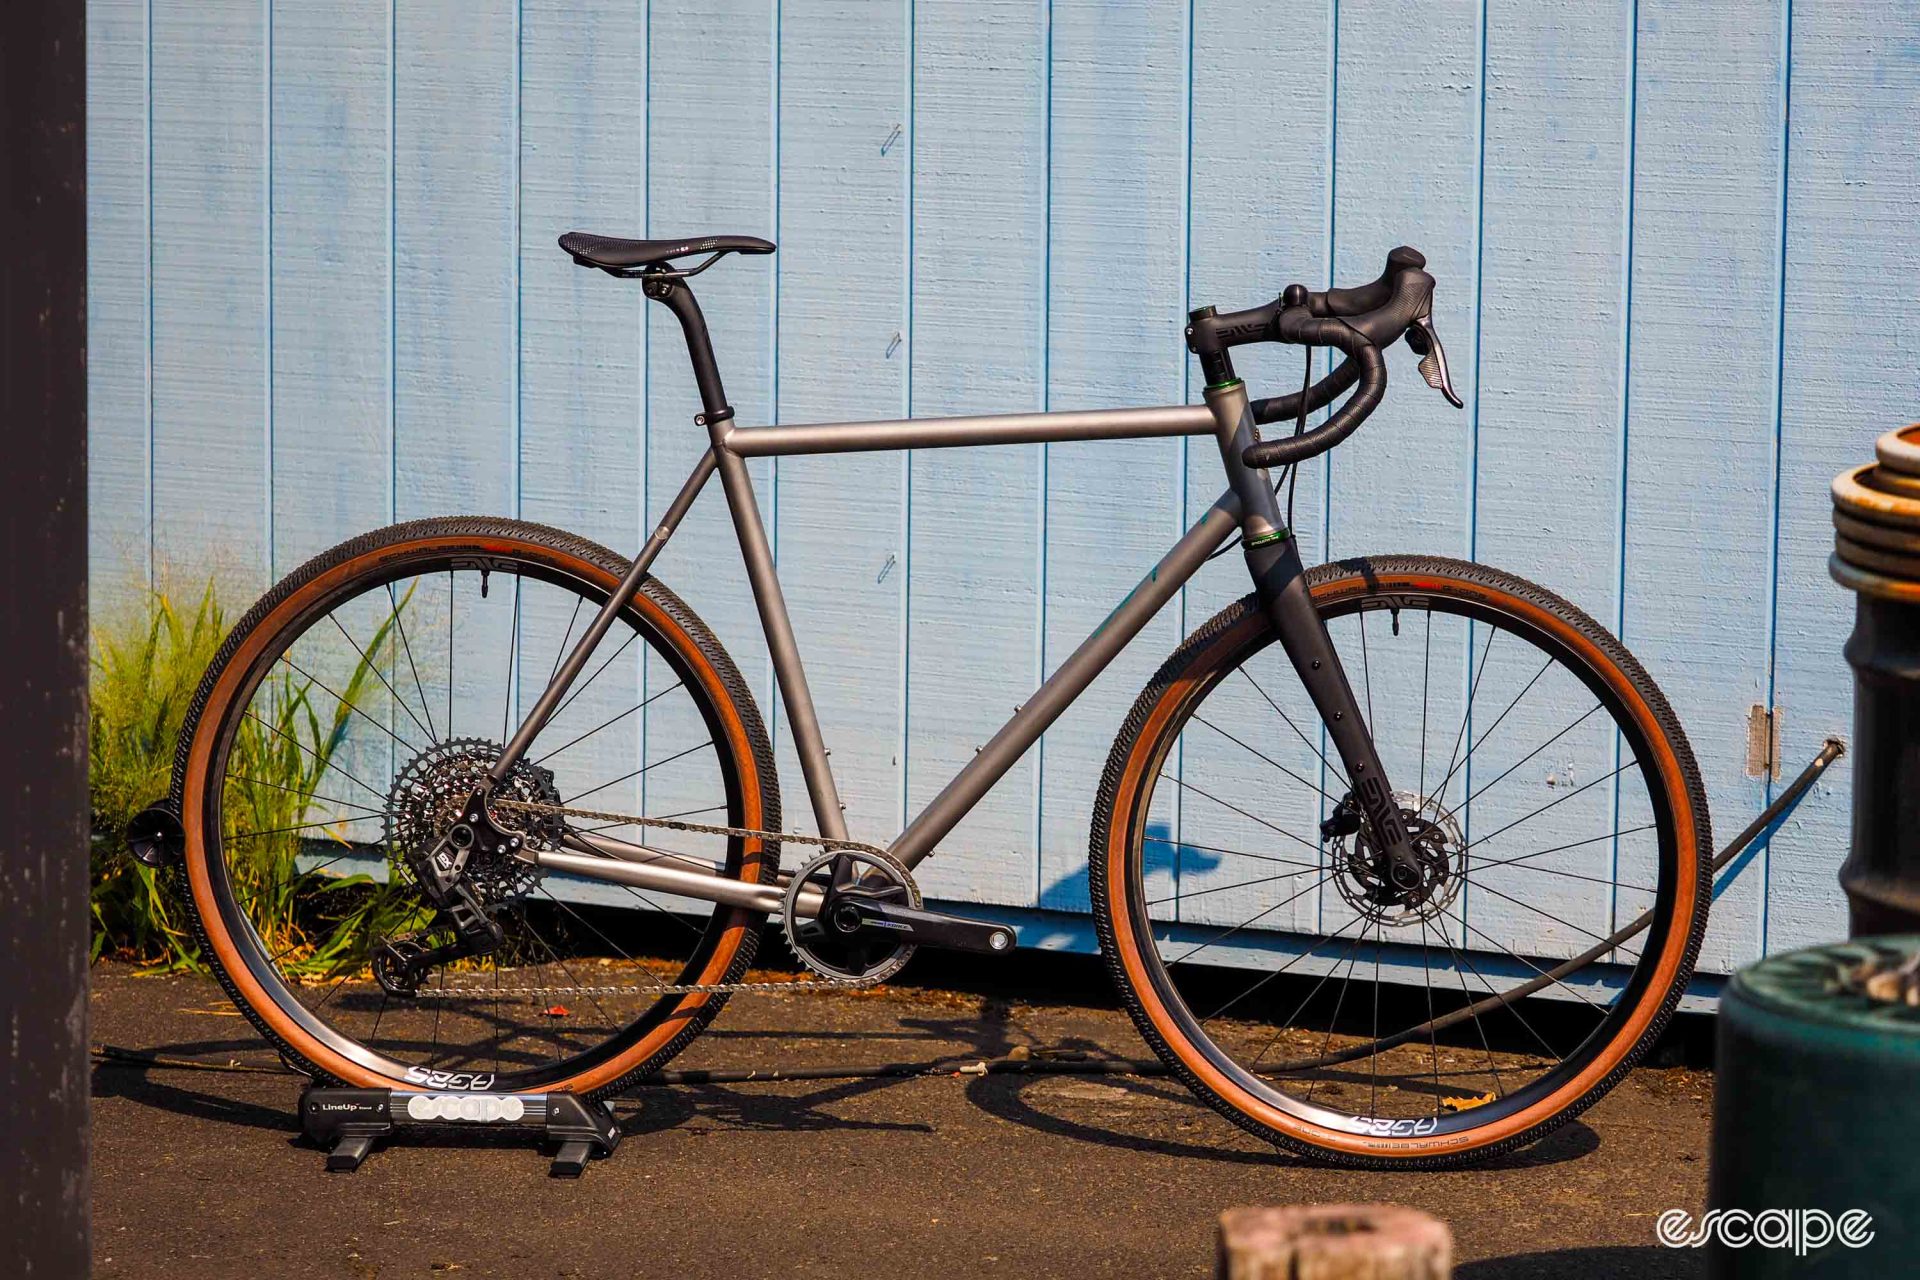 Sycip titanium gravel bike in profile.